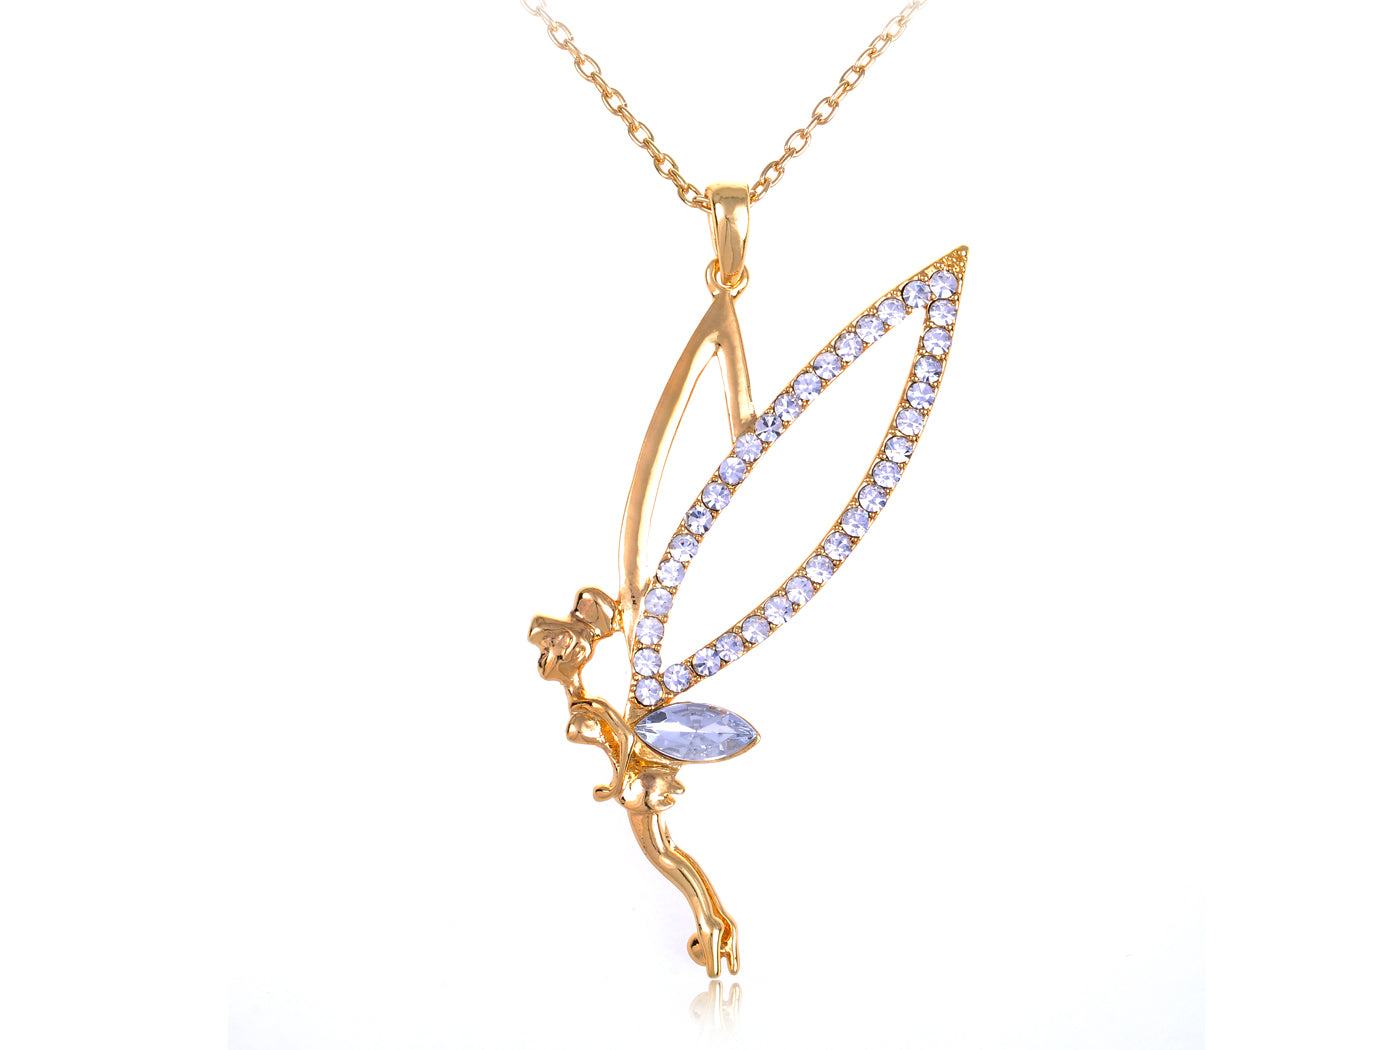 Colored Pixie Fairy Pendant Necklace